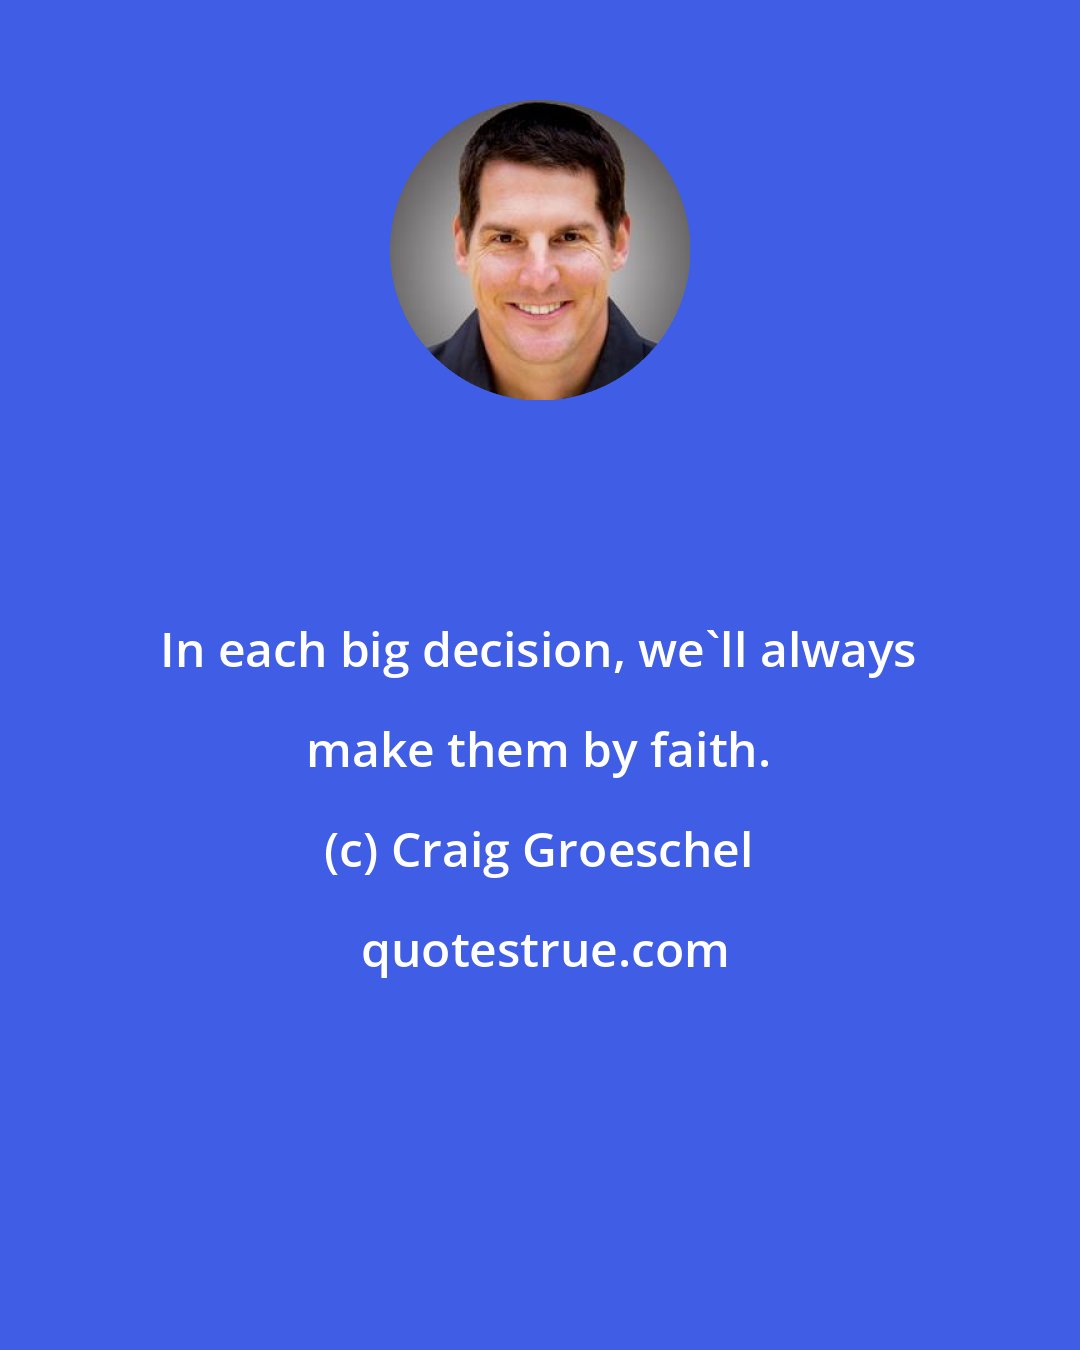 Craig Groeschel: In each big decision, we'll always make them by faith.